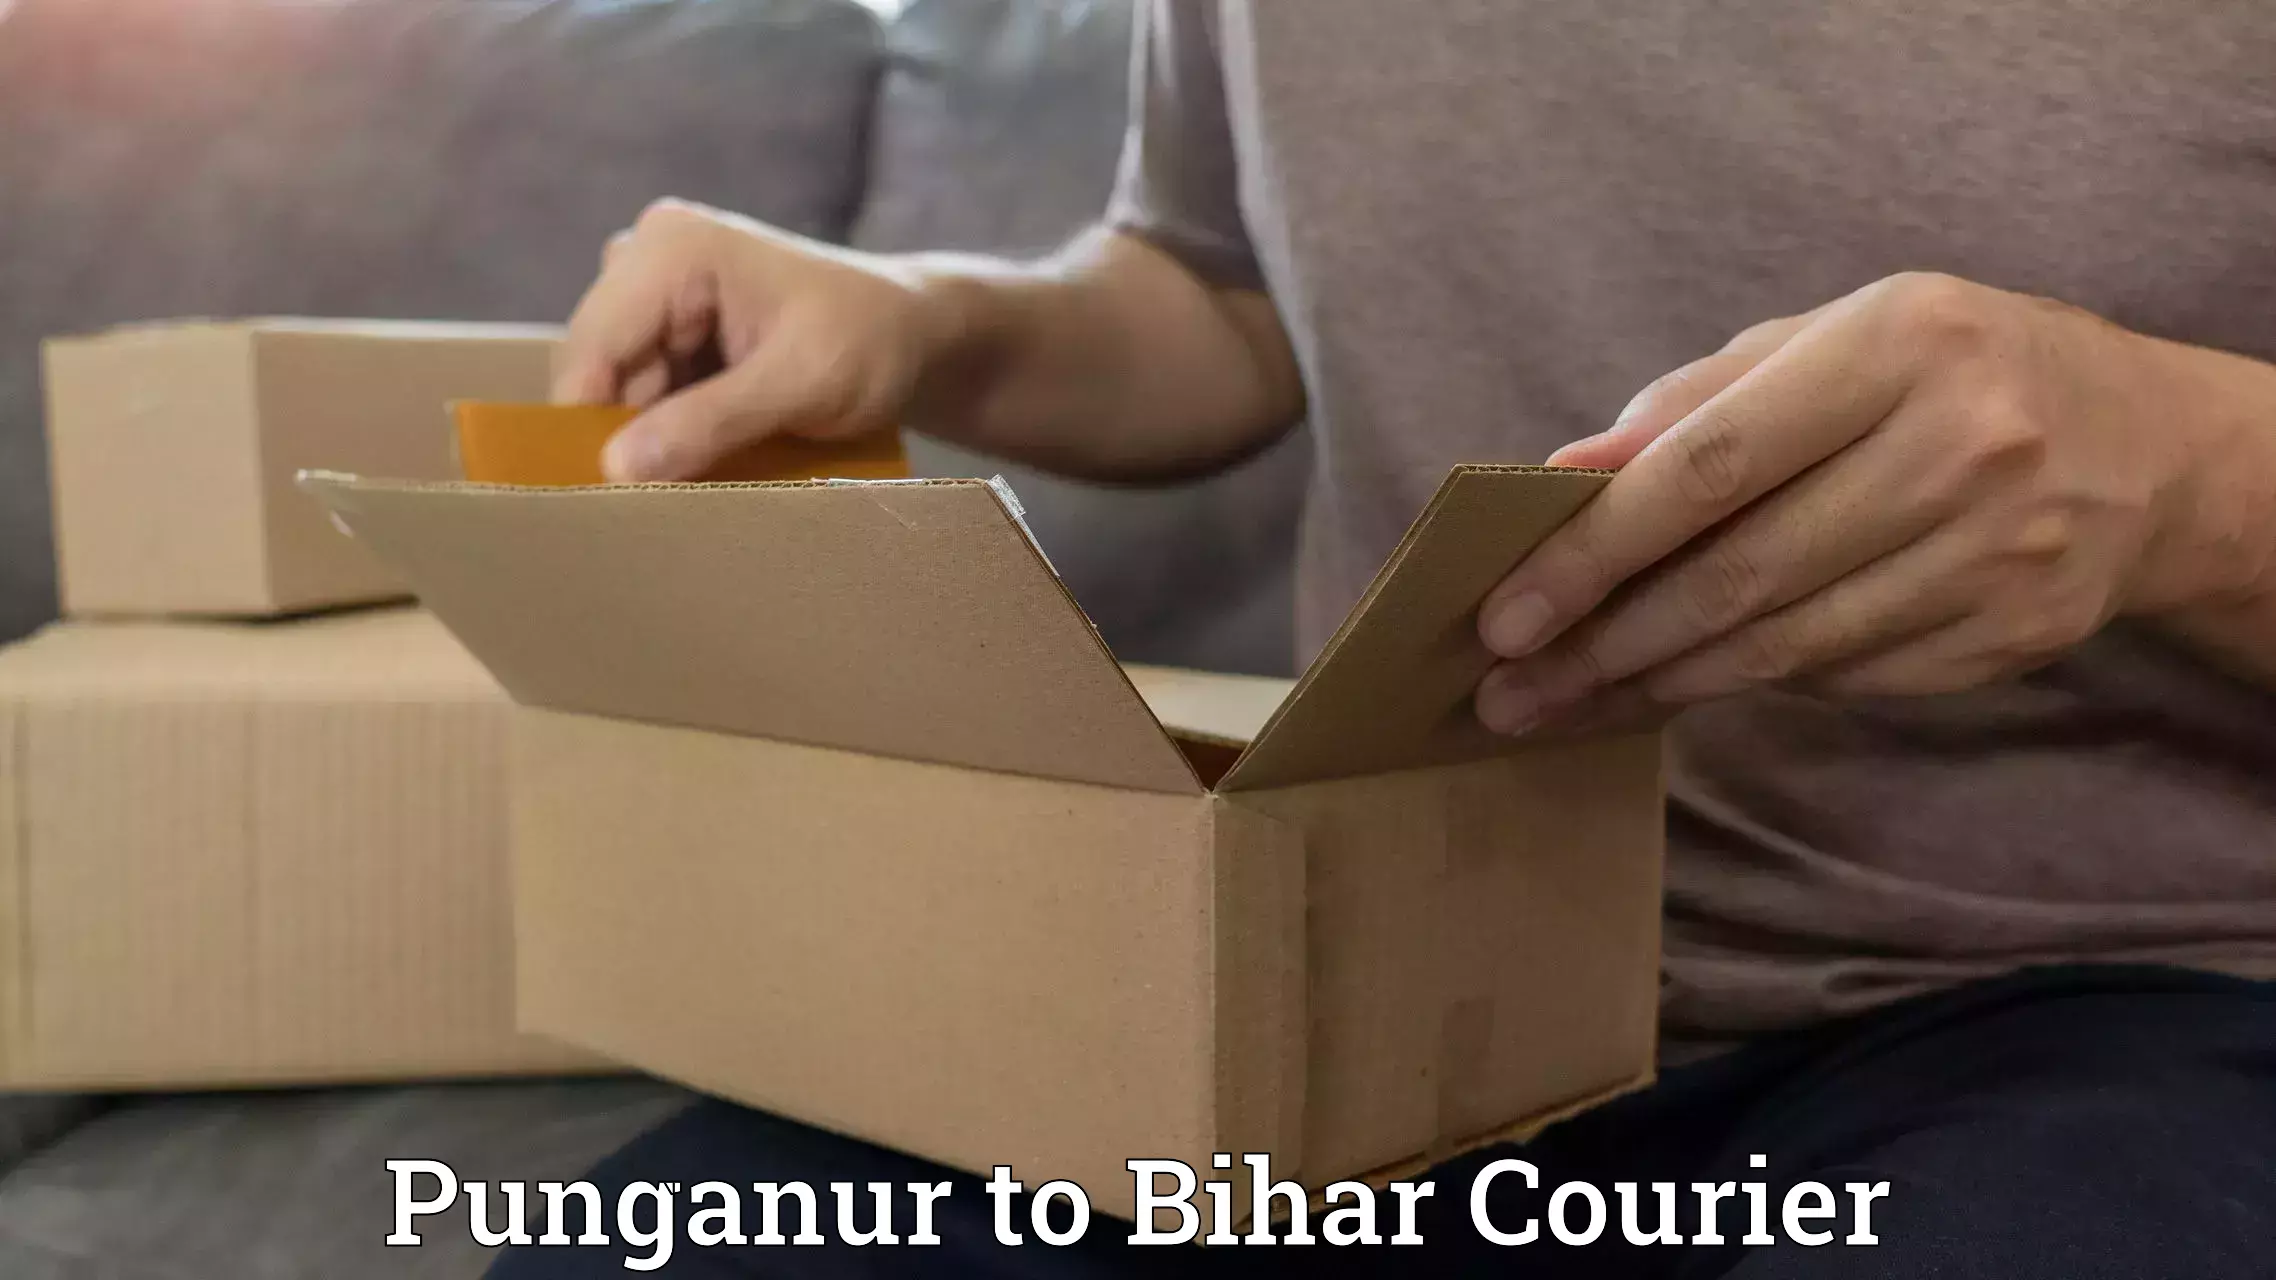 Professional courier handling Punganur to Bharwara